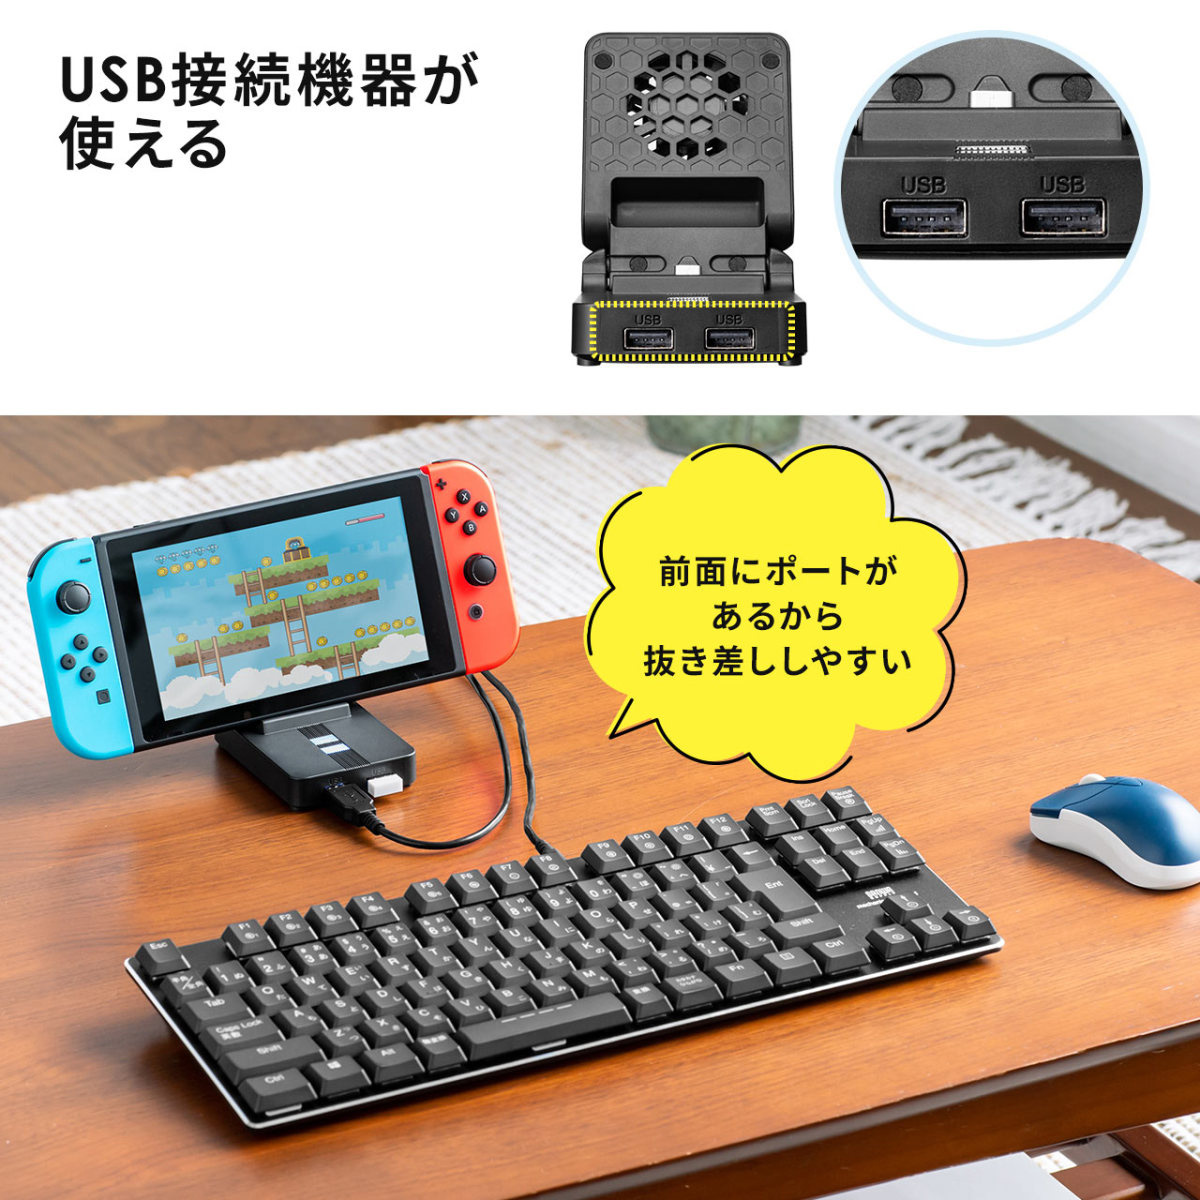 Nintendo Switch 充電 スタンド 折りたたみ ニンテンドー Switchドッグ 冷却ファン 静音 USBハブ HDMI出力 軽量  コンパクト 有機ELモデル対応 400-NSW011BK